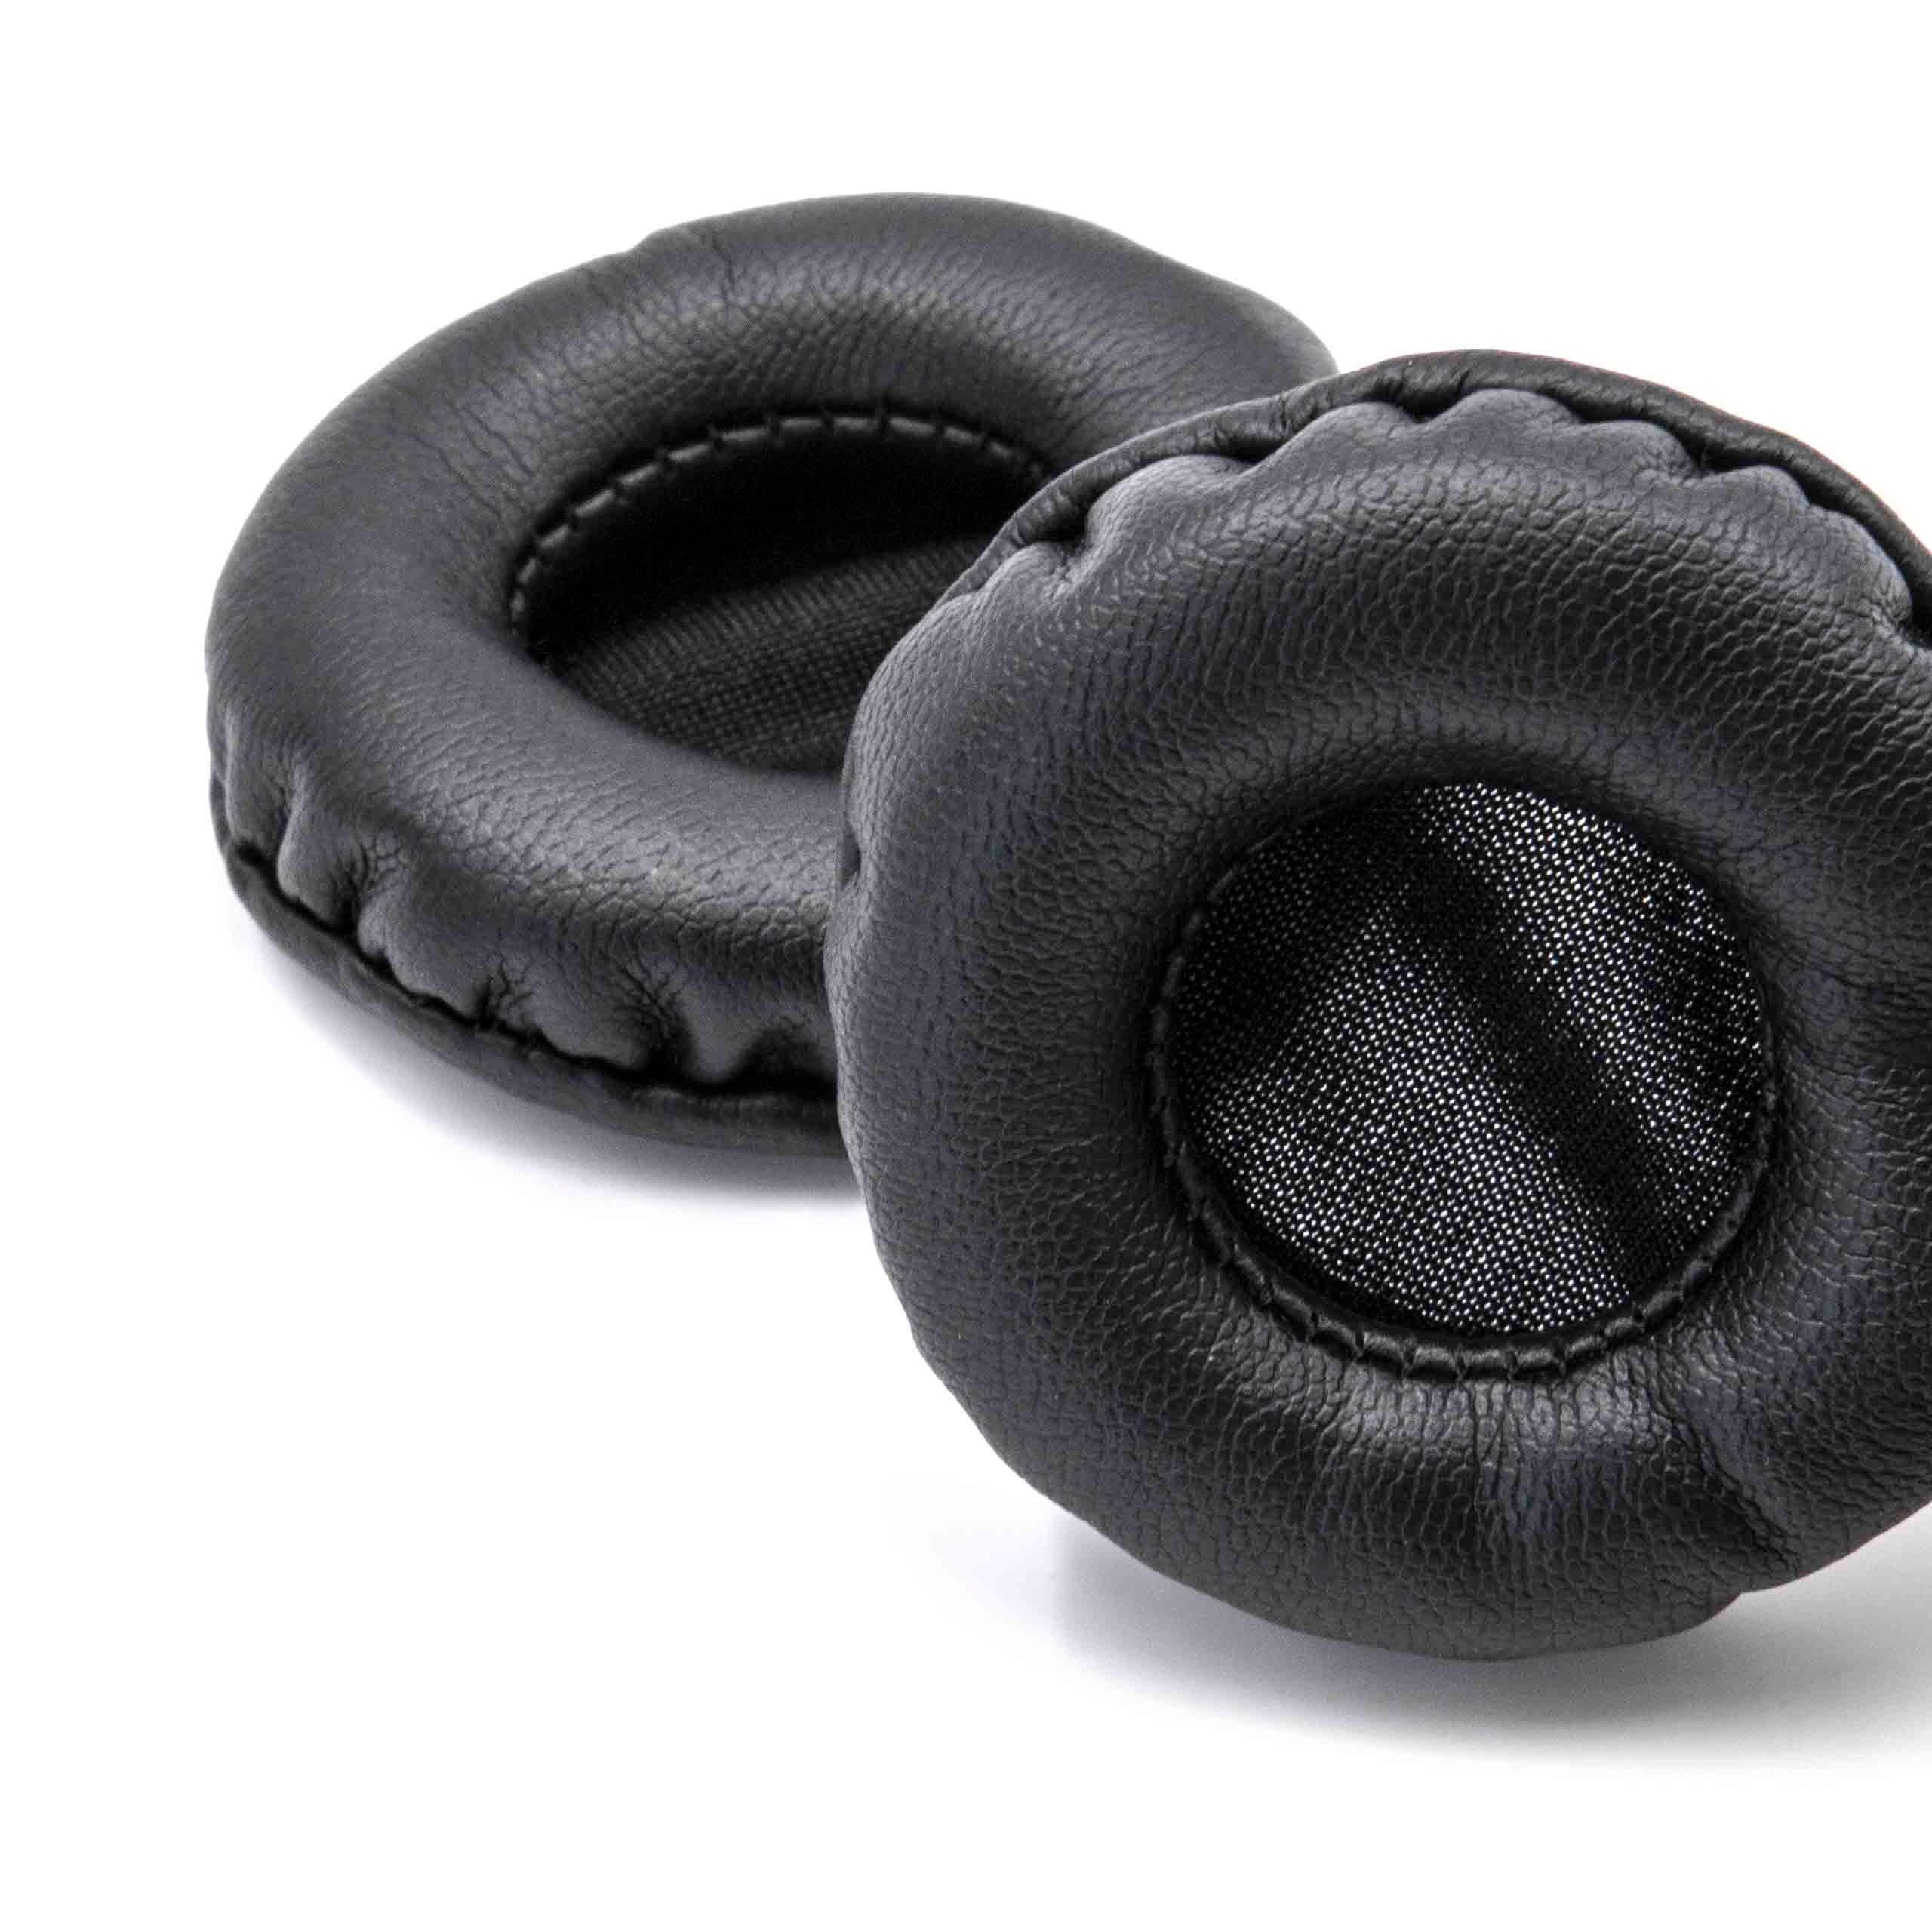 2x 1 paio di cuscinetti - poliuretano, 5 cm diametro esterno, nero